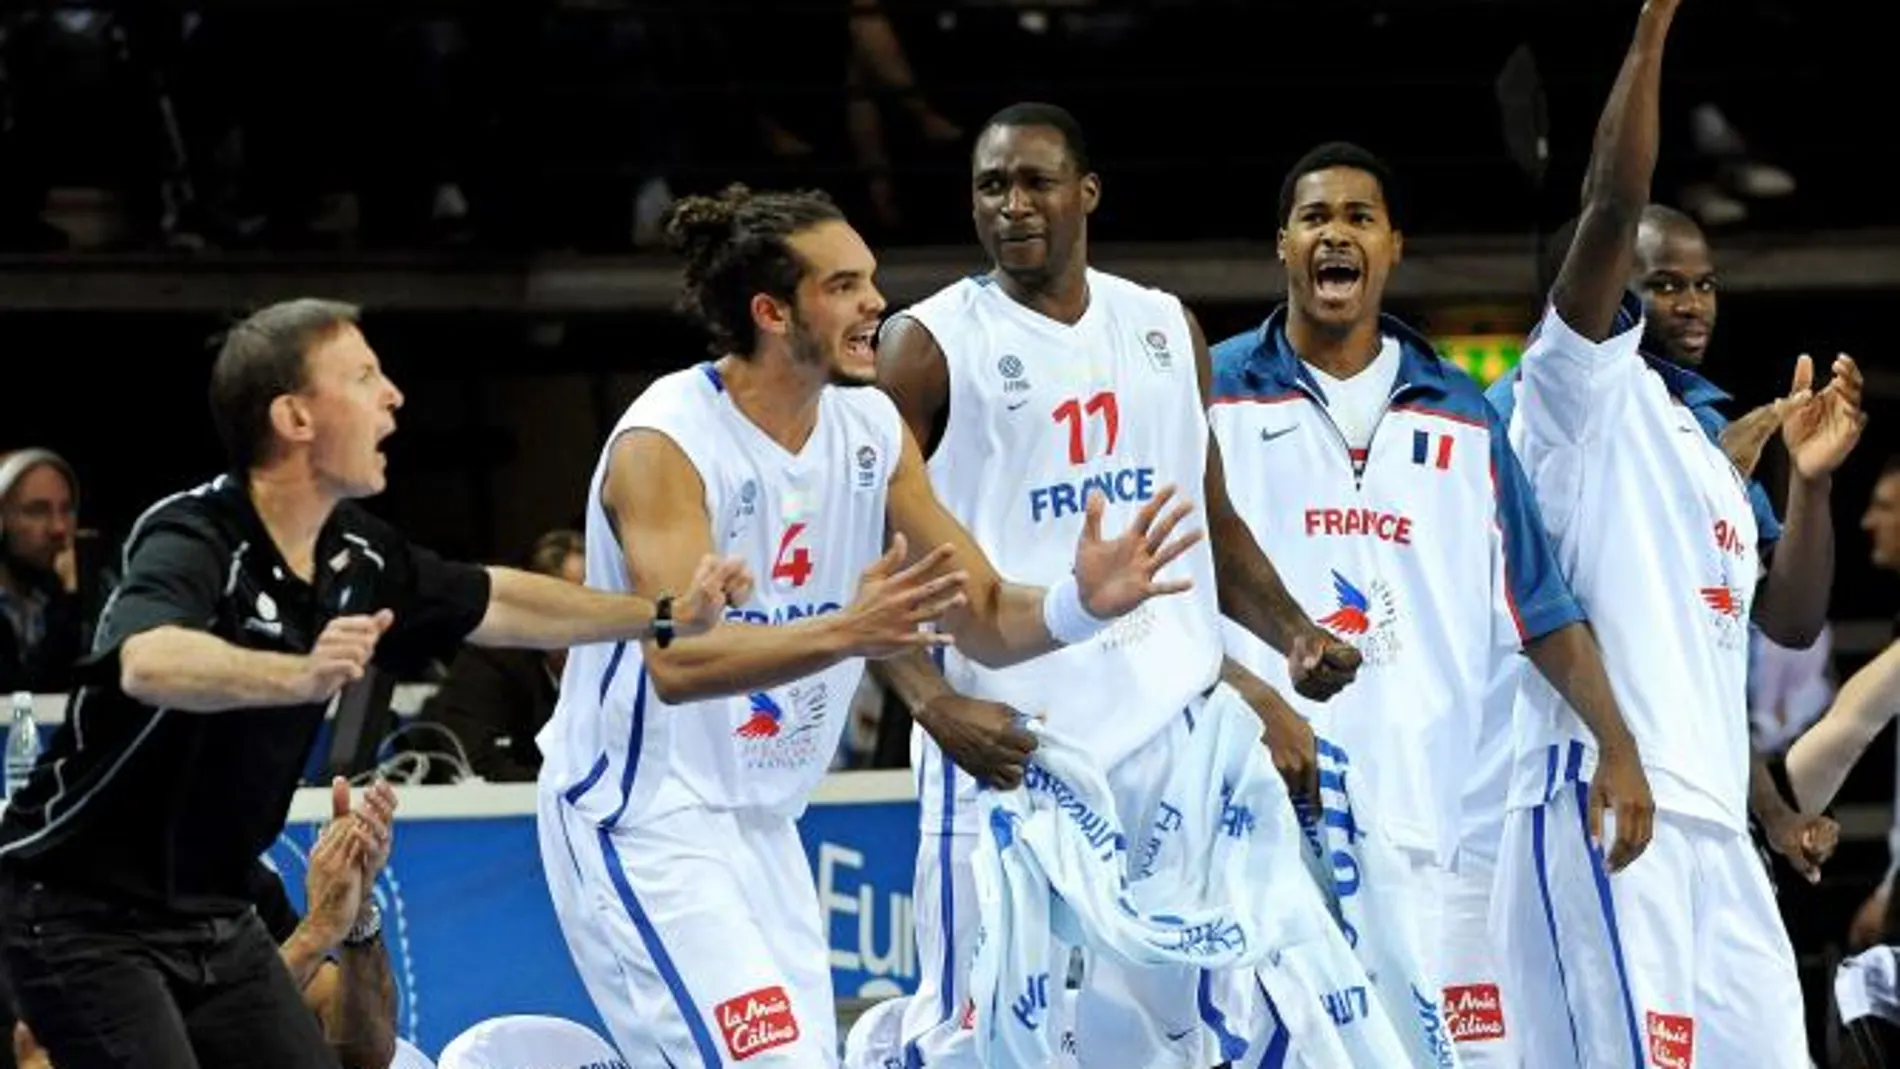 Los jugadores y el entrenador francés celebran una jugada desde el banquillo durante el partido Francia-Rusia, de semifinales del Campeonato de Europa de baloncesto